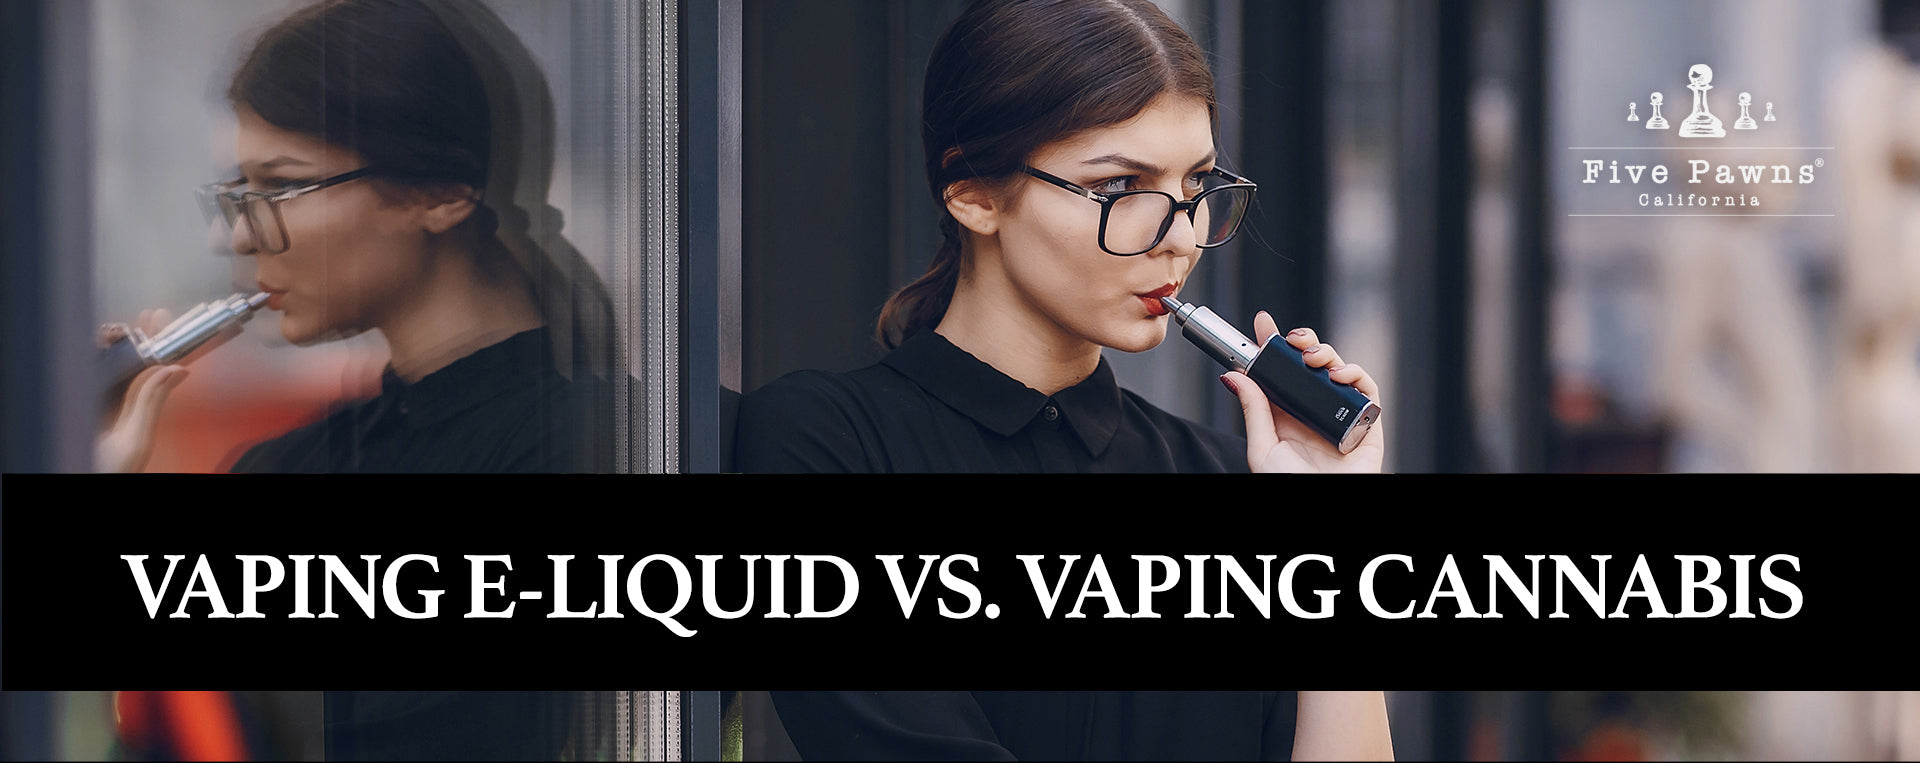 Vaping E-Liquid vs. Vaping Cannabis